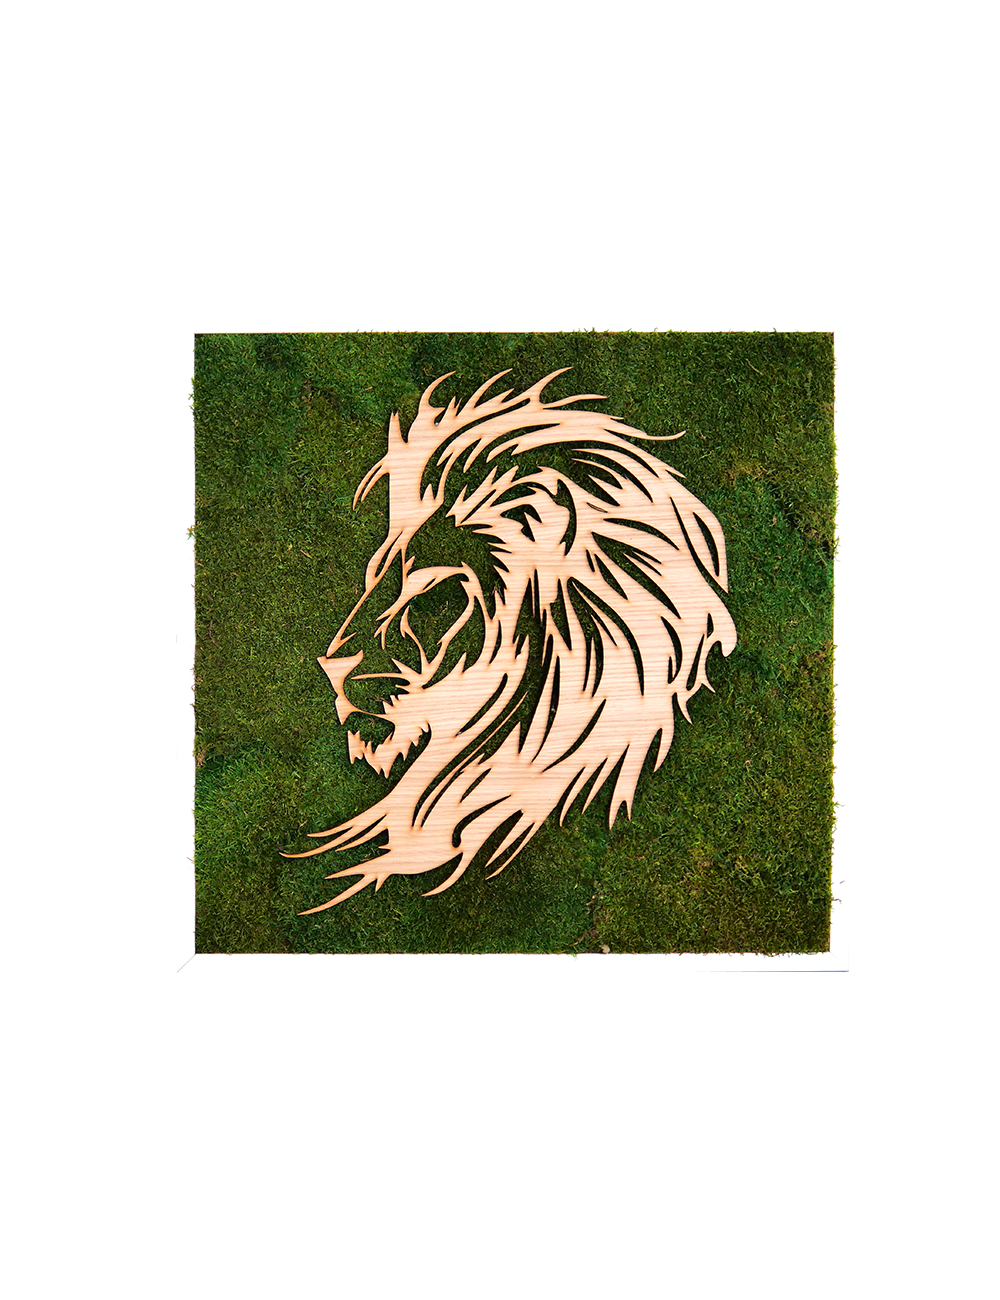 Tableau végétal avec une tête de lion en bois